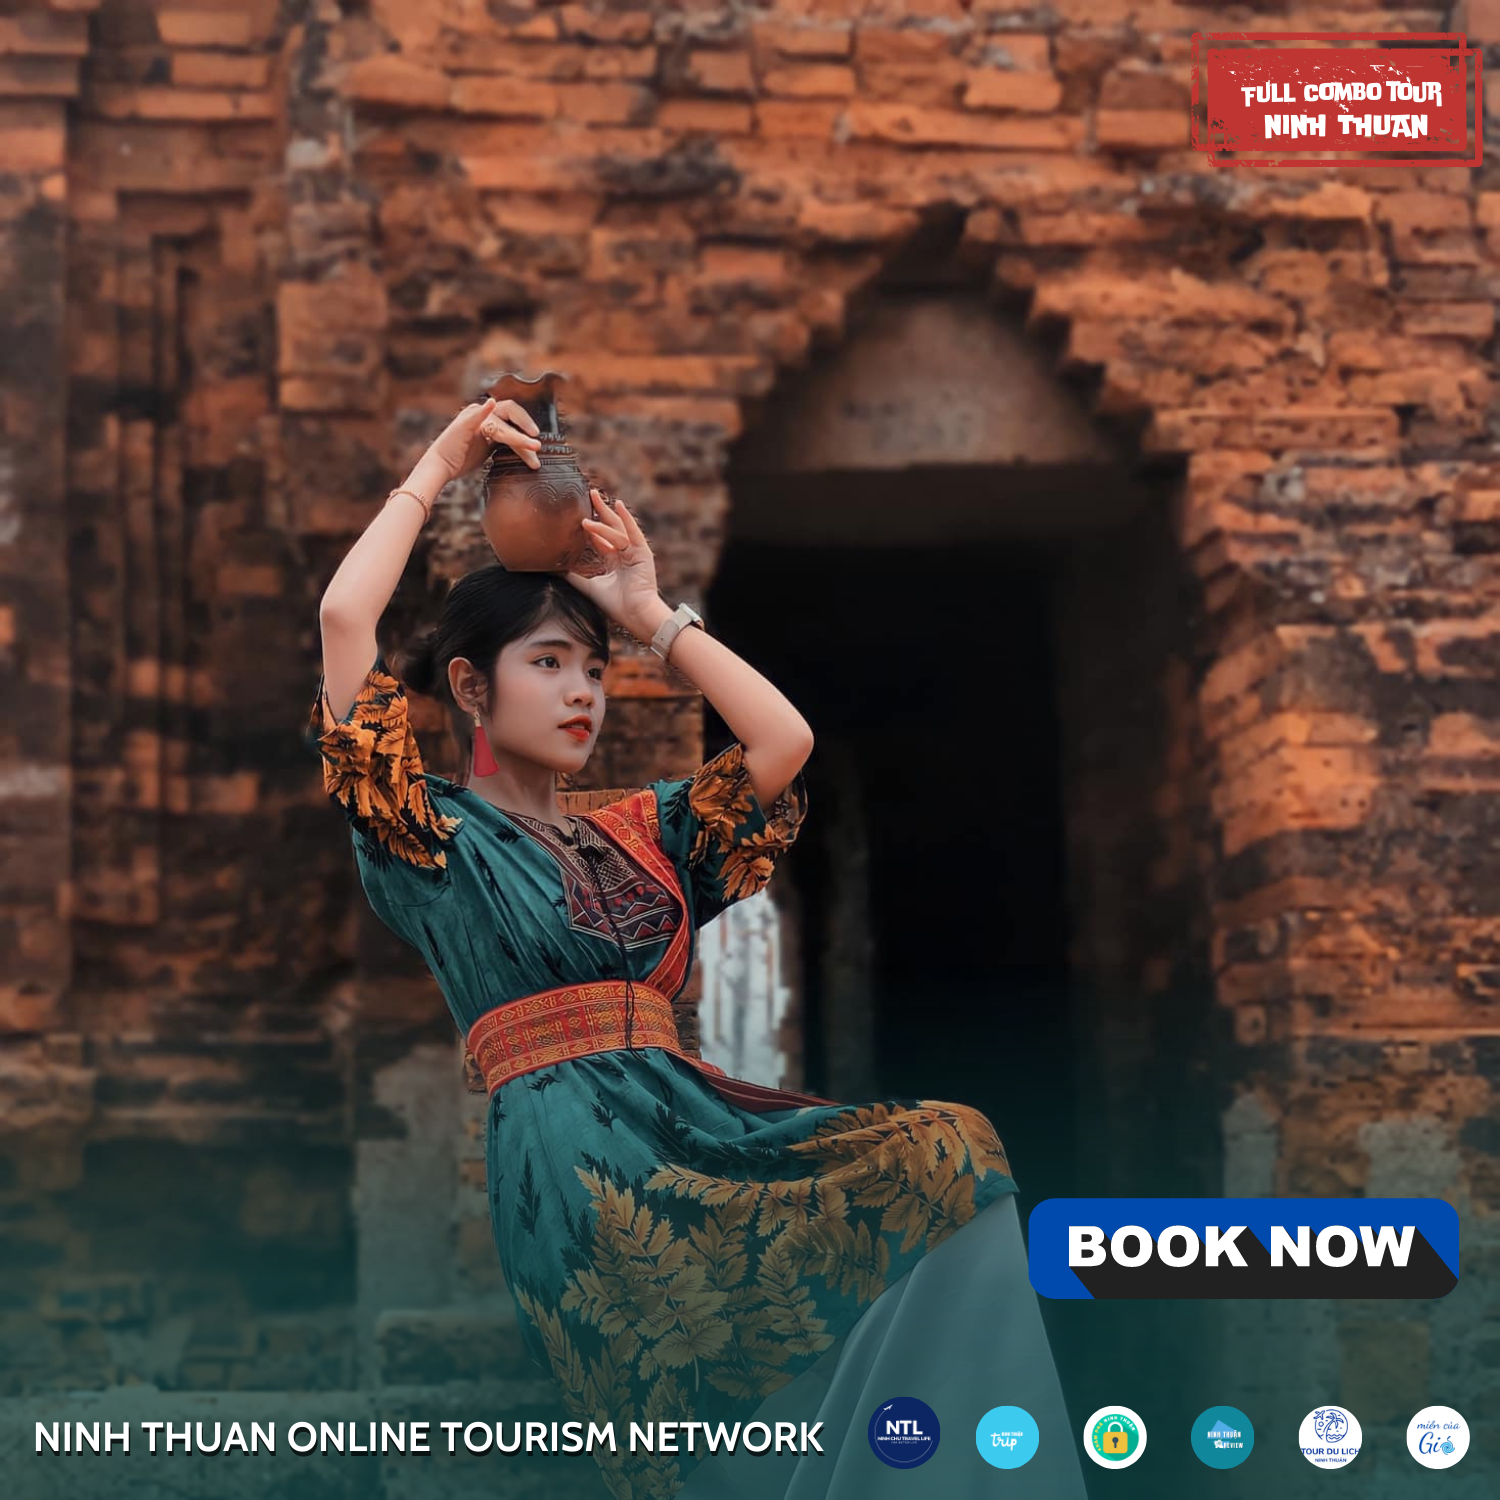 Ghé thăm đền tháp Po Klong Garai 800 năm tuổi tại Ninh Thuận. Ảnh: AD